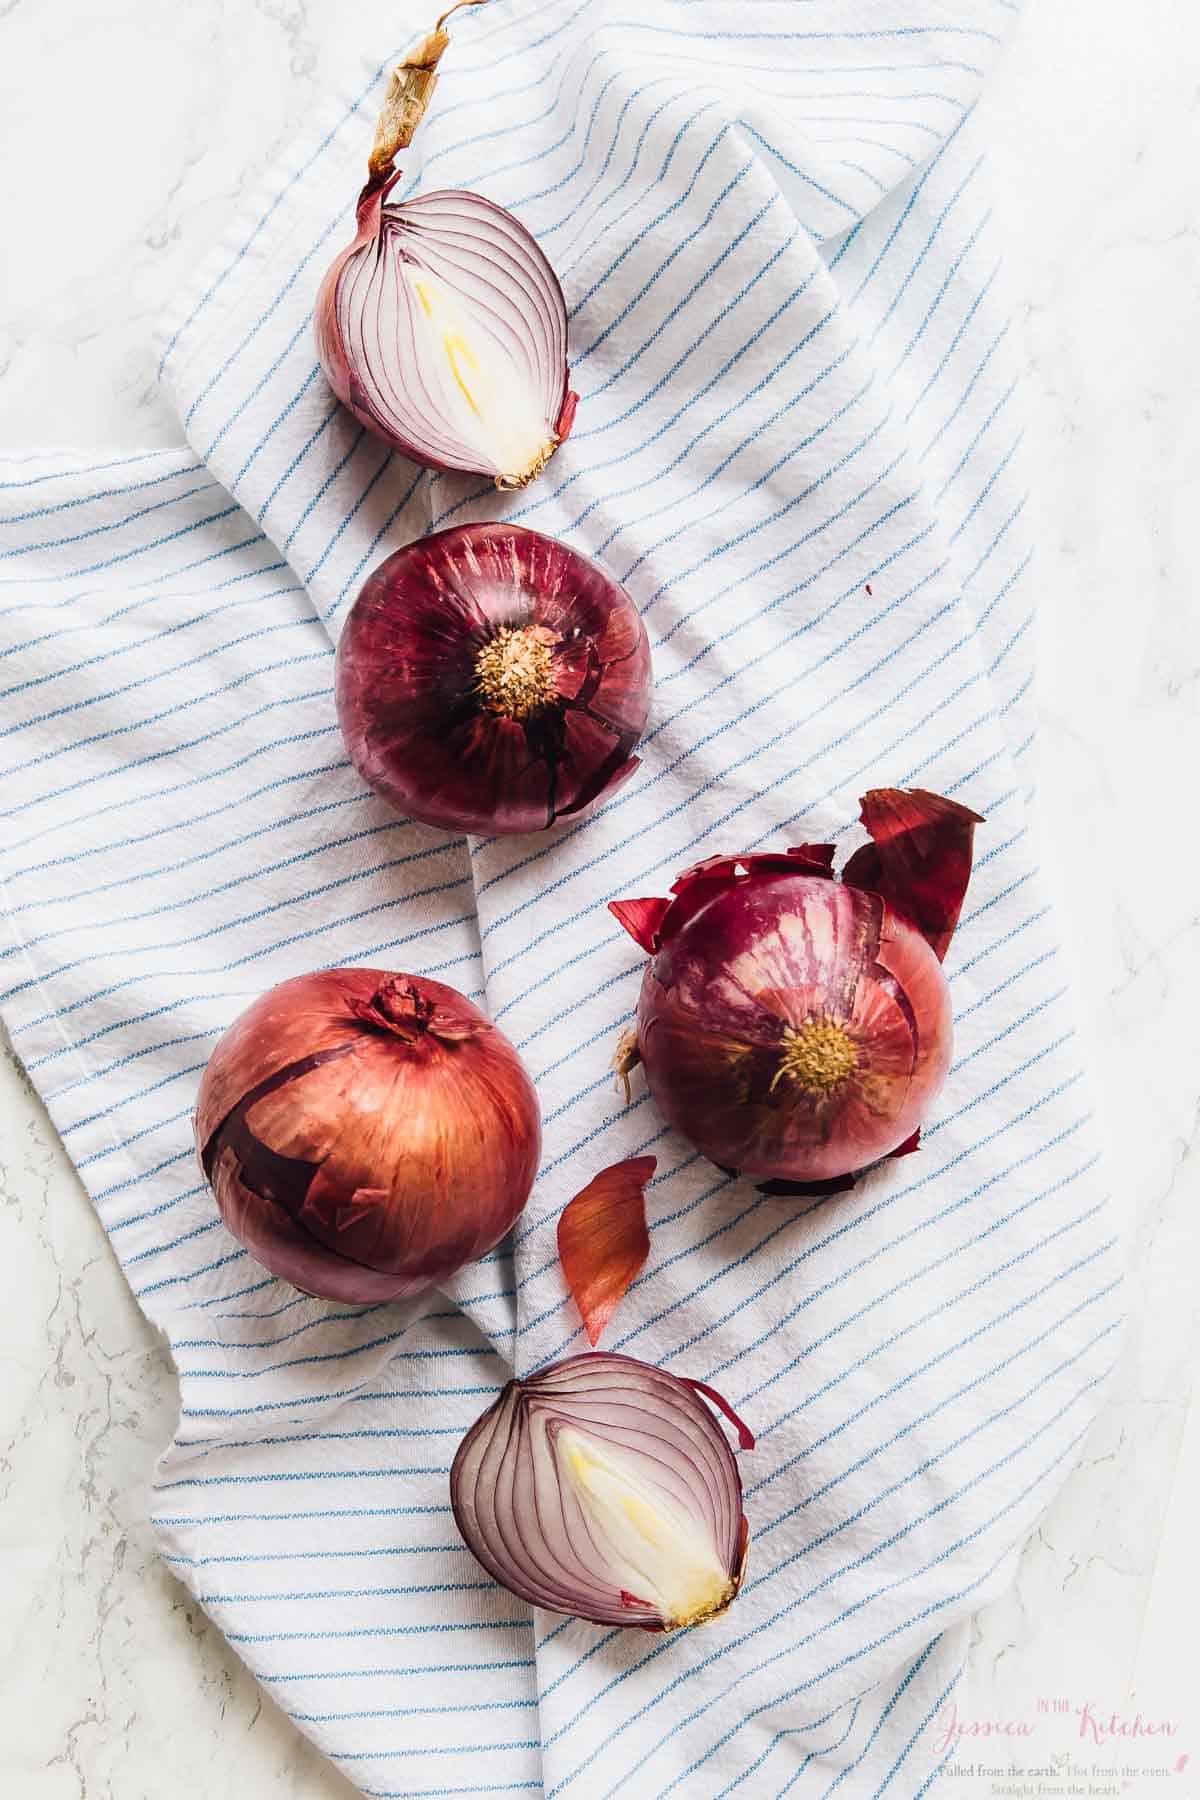 Raw onions on a striped cloth. 